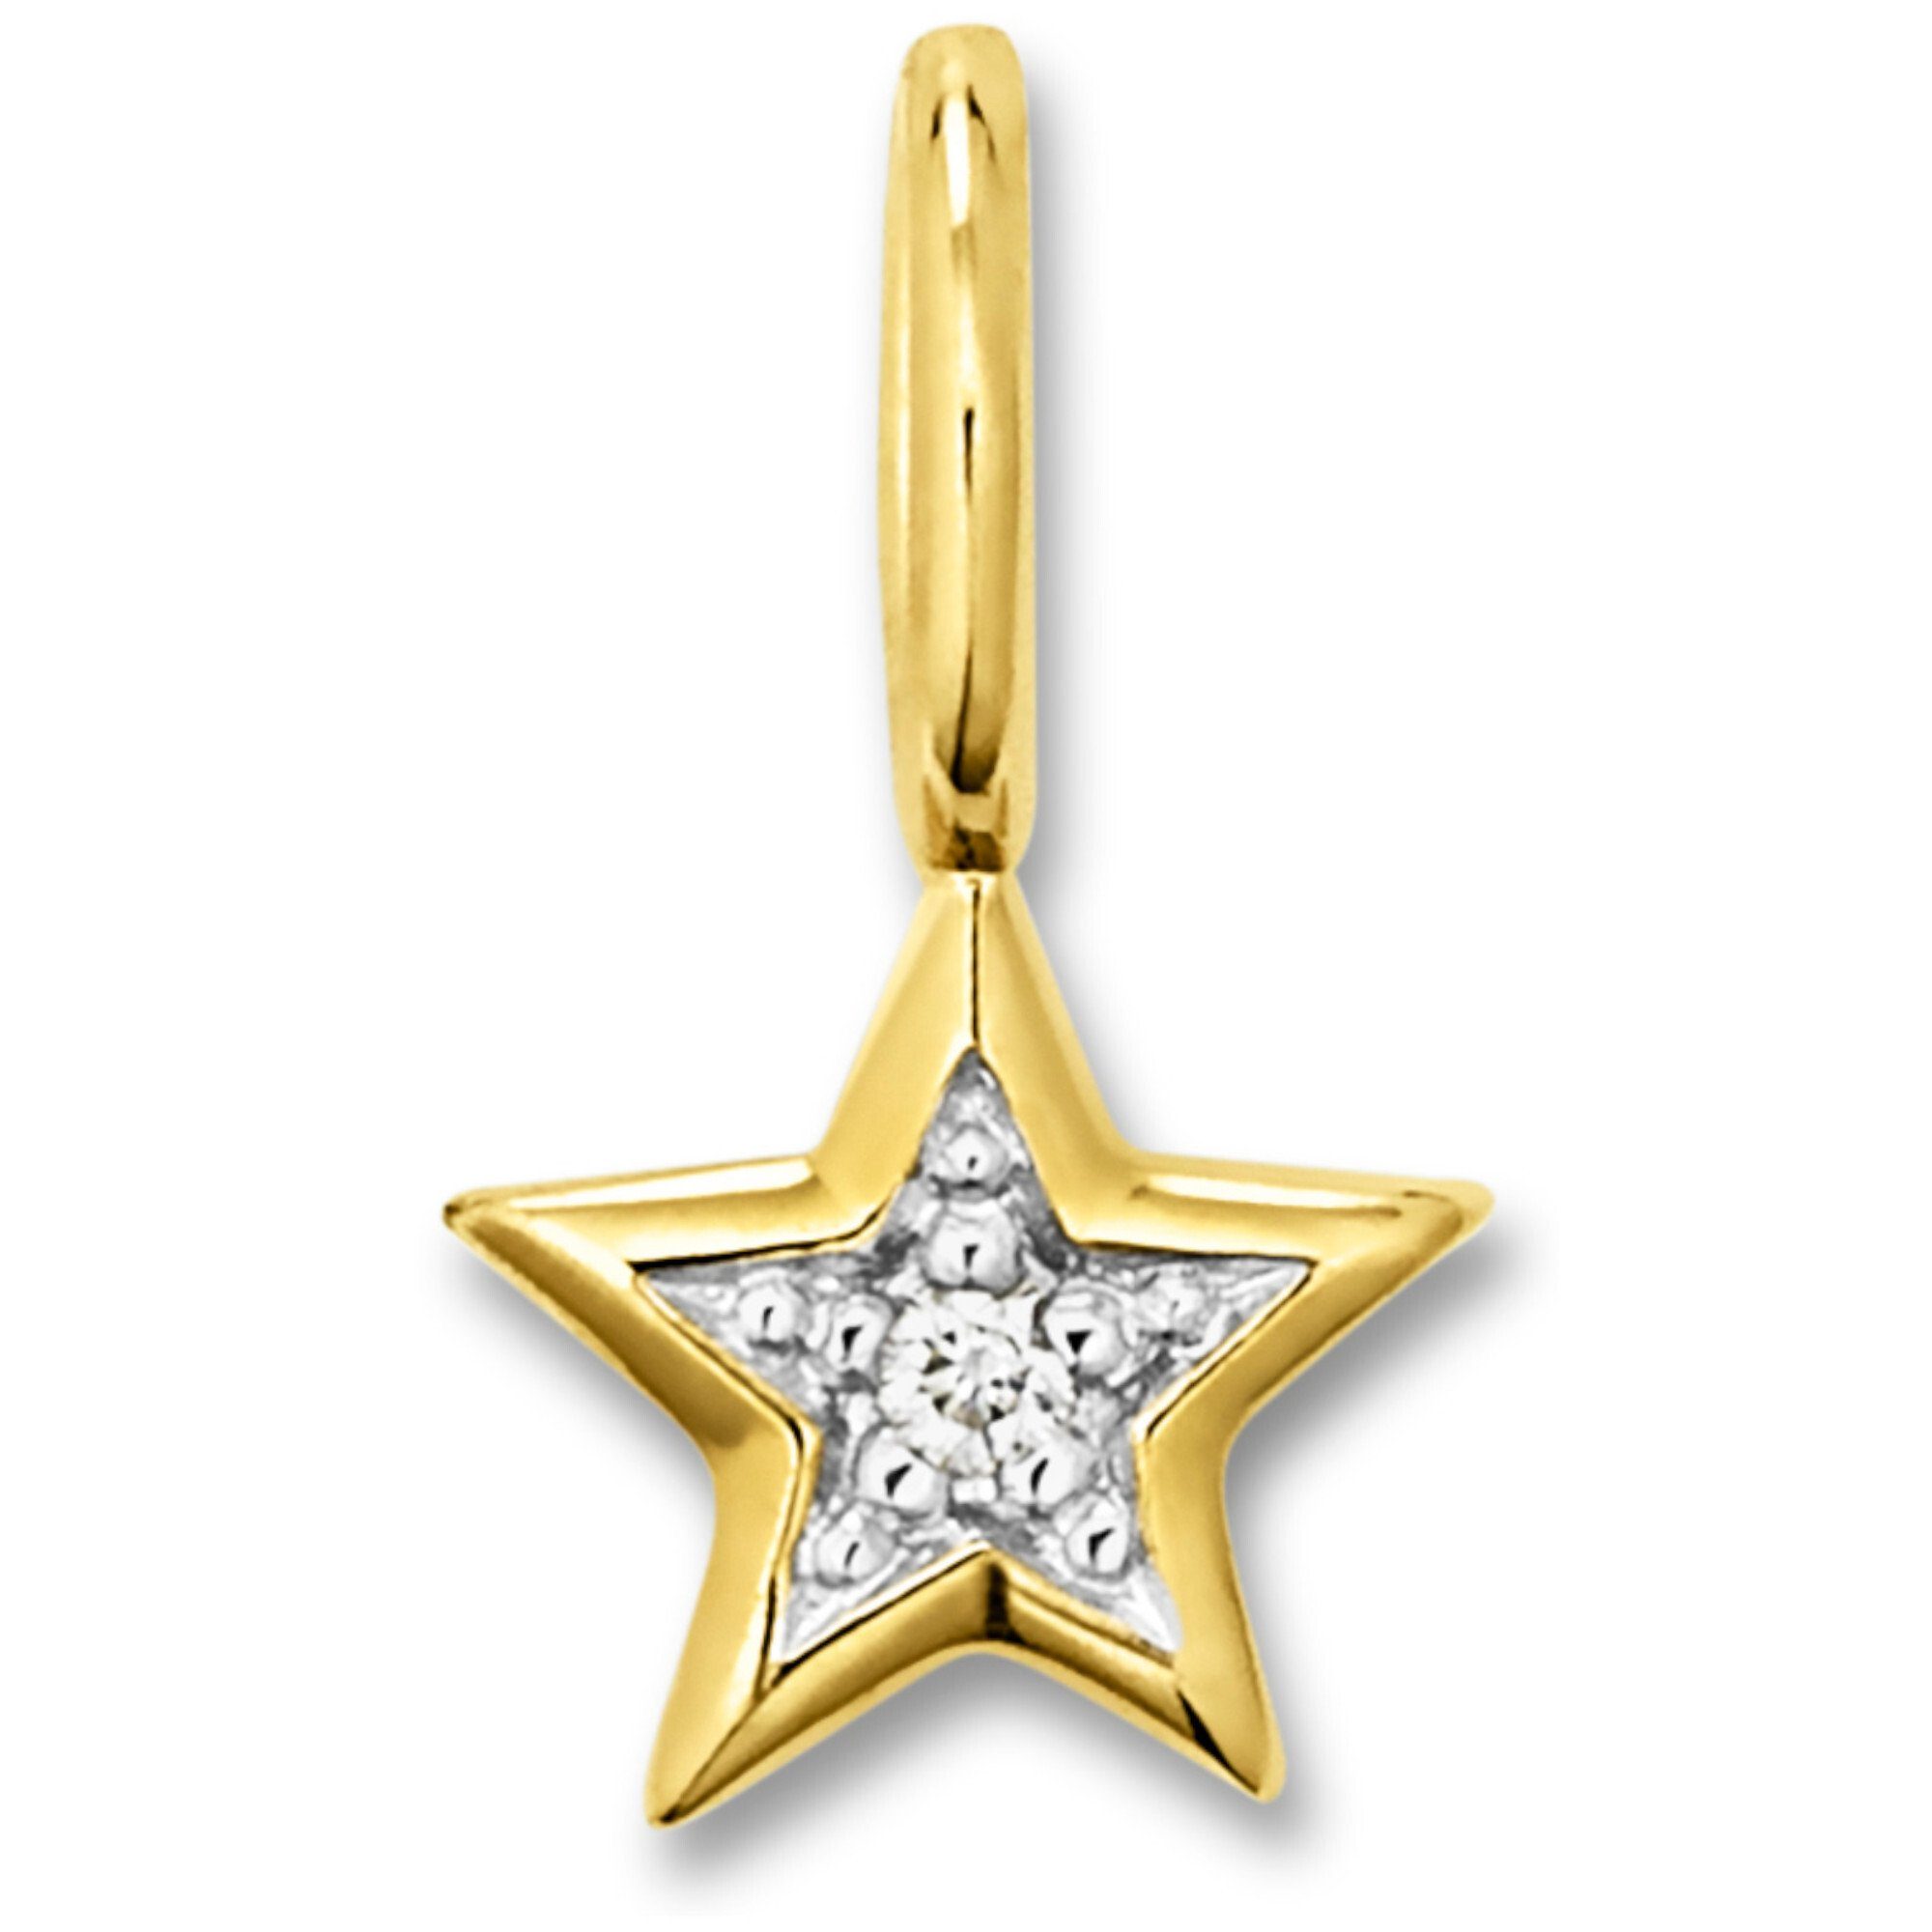 ONE ELEMENT Kettenanhänger 0.01 ct Diamant Brillant Stern Anhänger aus 333 Gelbgold, Damen Gold Schmuck Stern